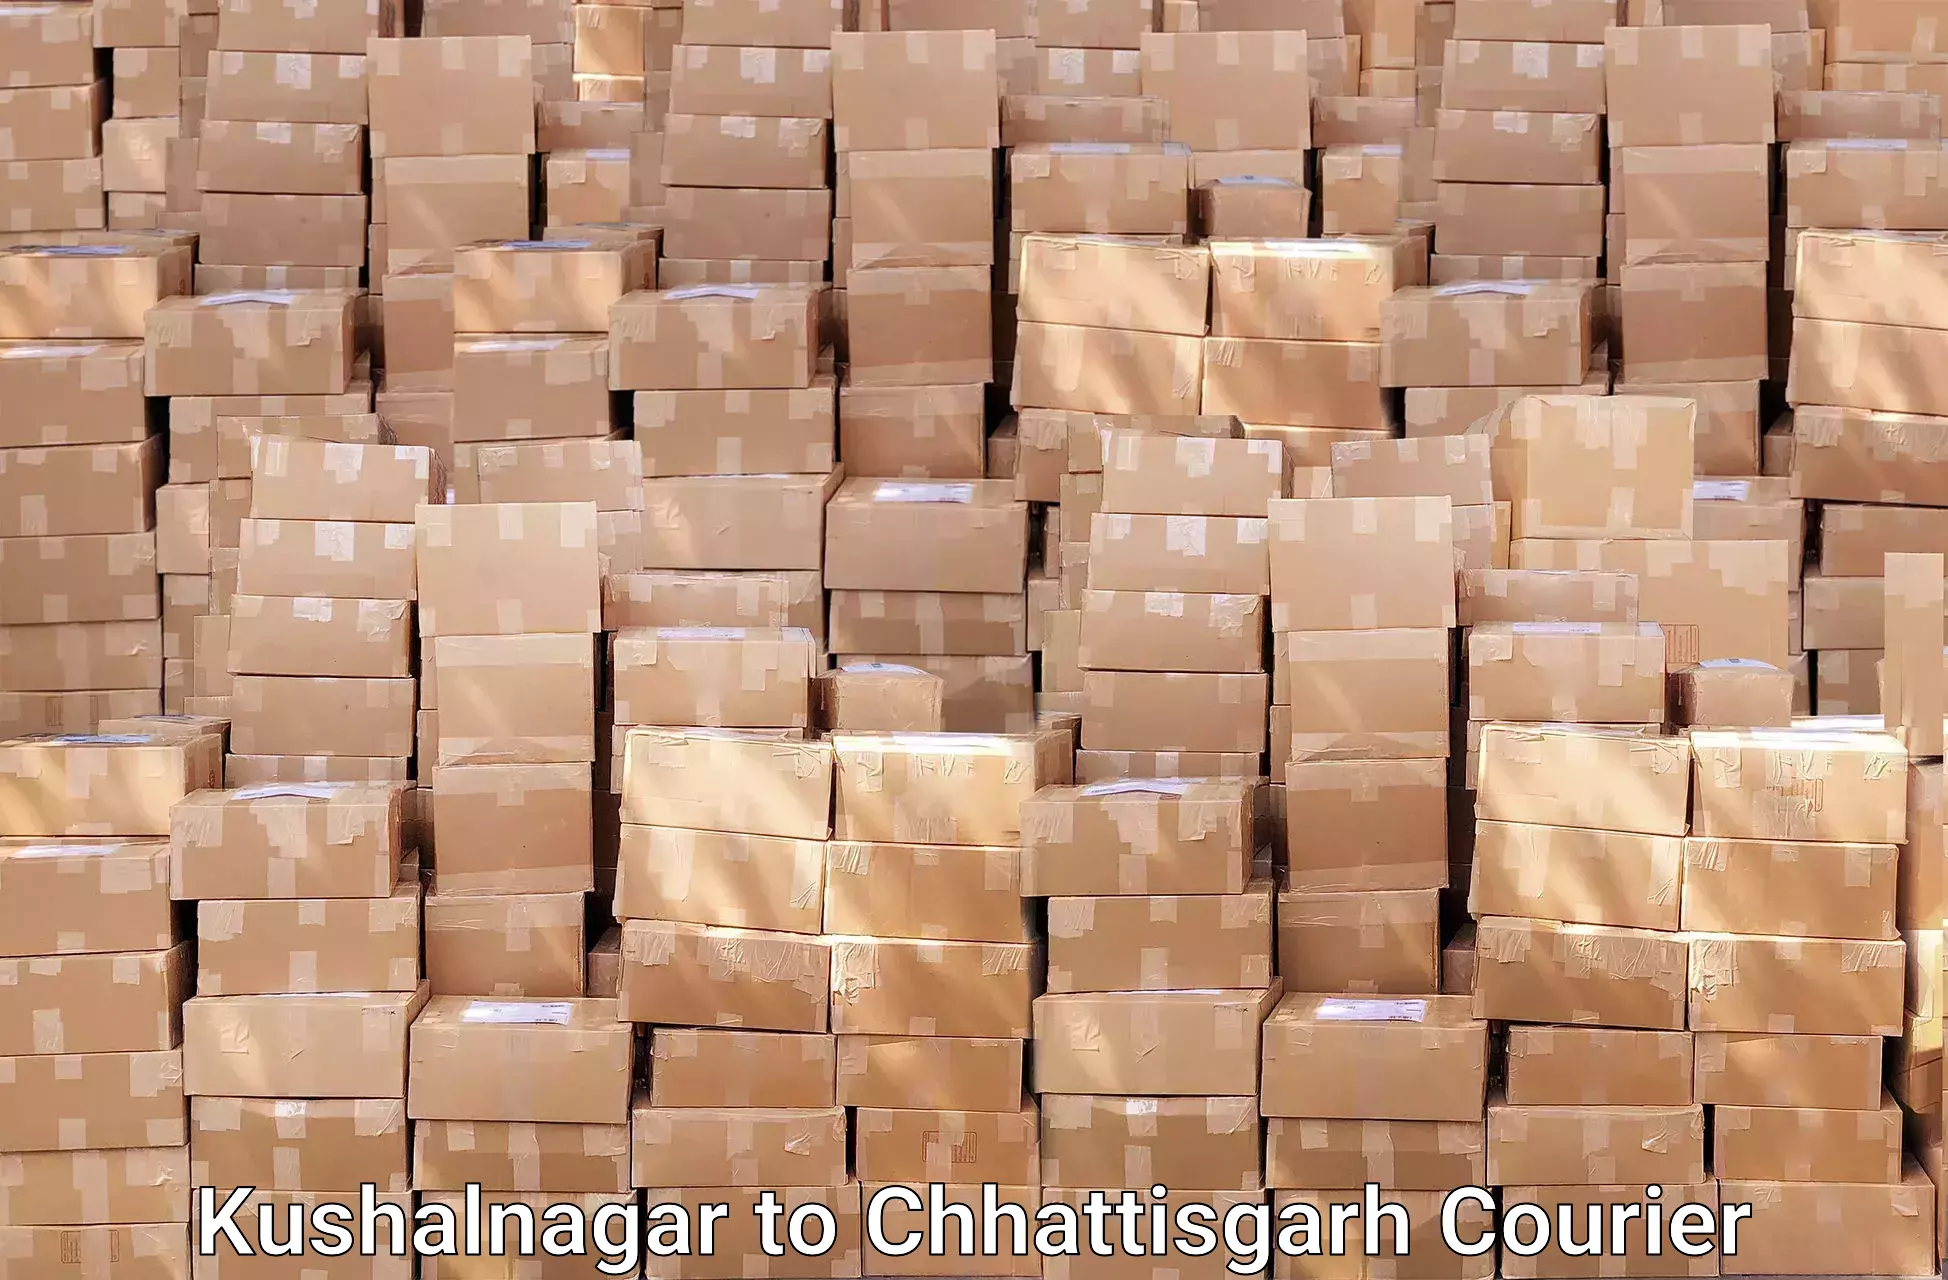 Professional packing services Kushalnagar to Pandariya